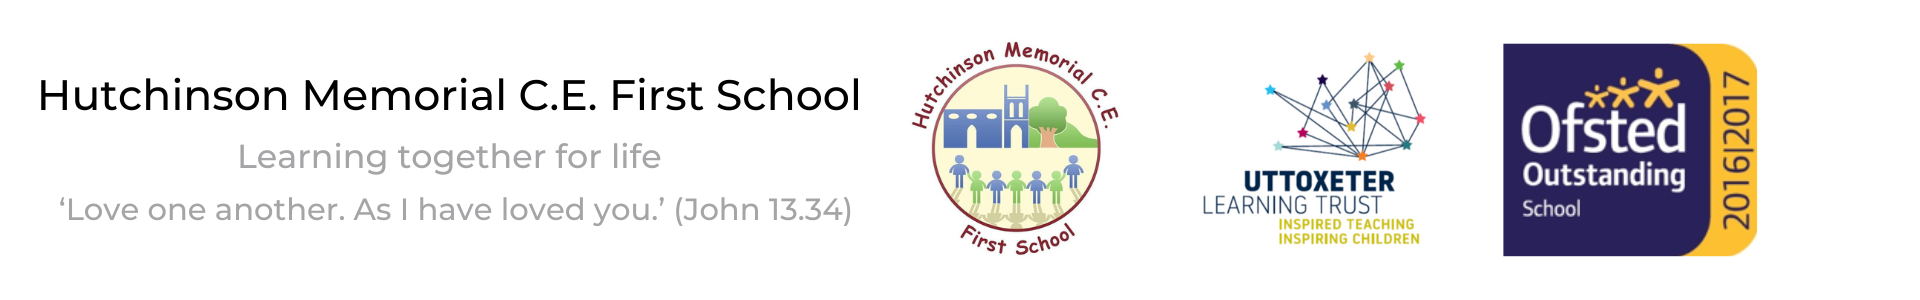 Hutchinson Memorial C.E. First School